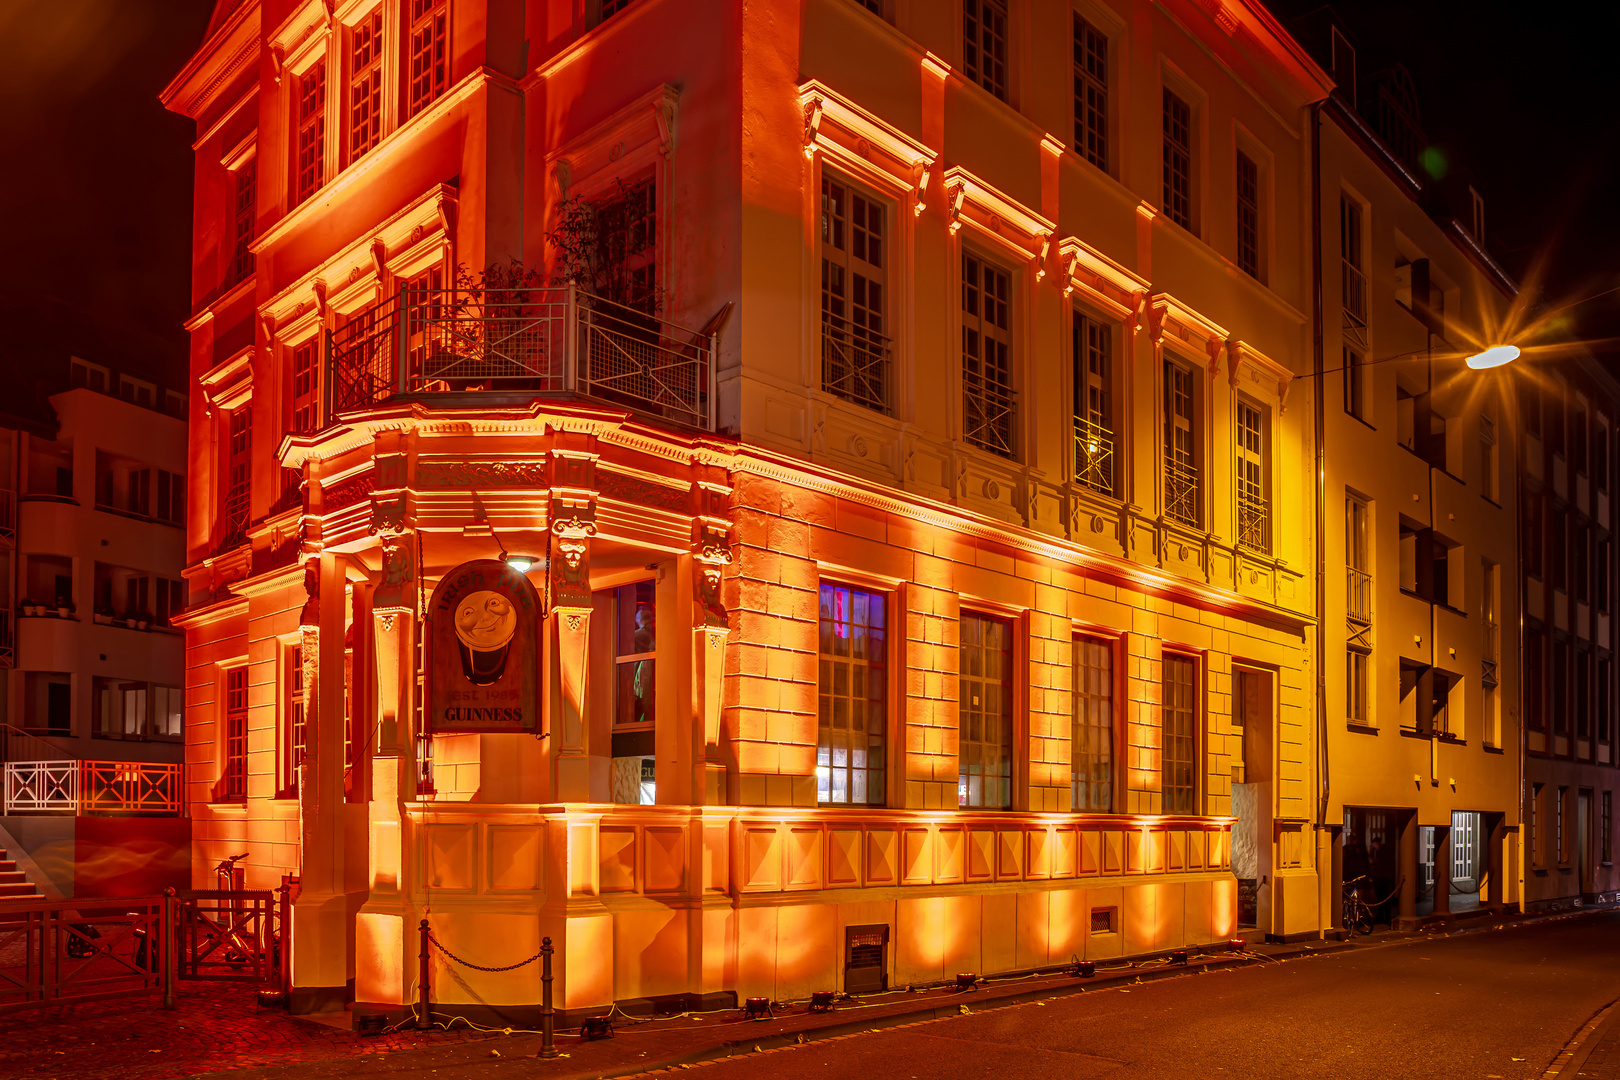 Der Irish Pub in Koblenz, illuminiert zu Halloween 2022